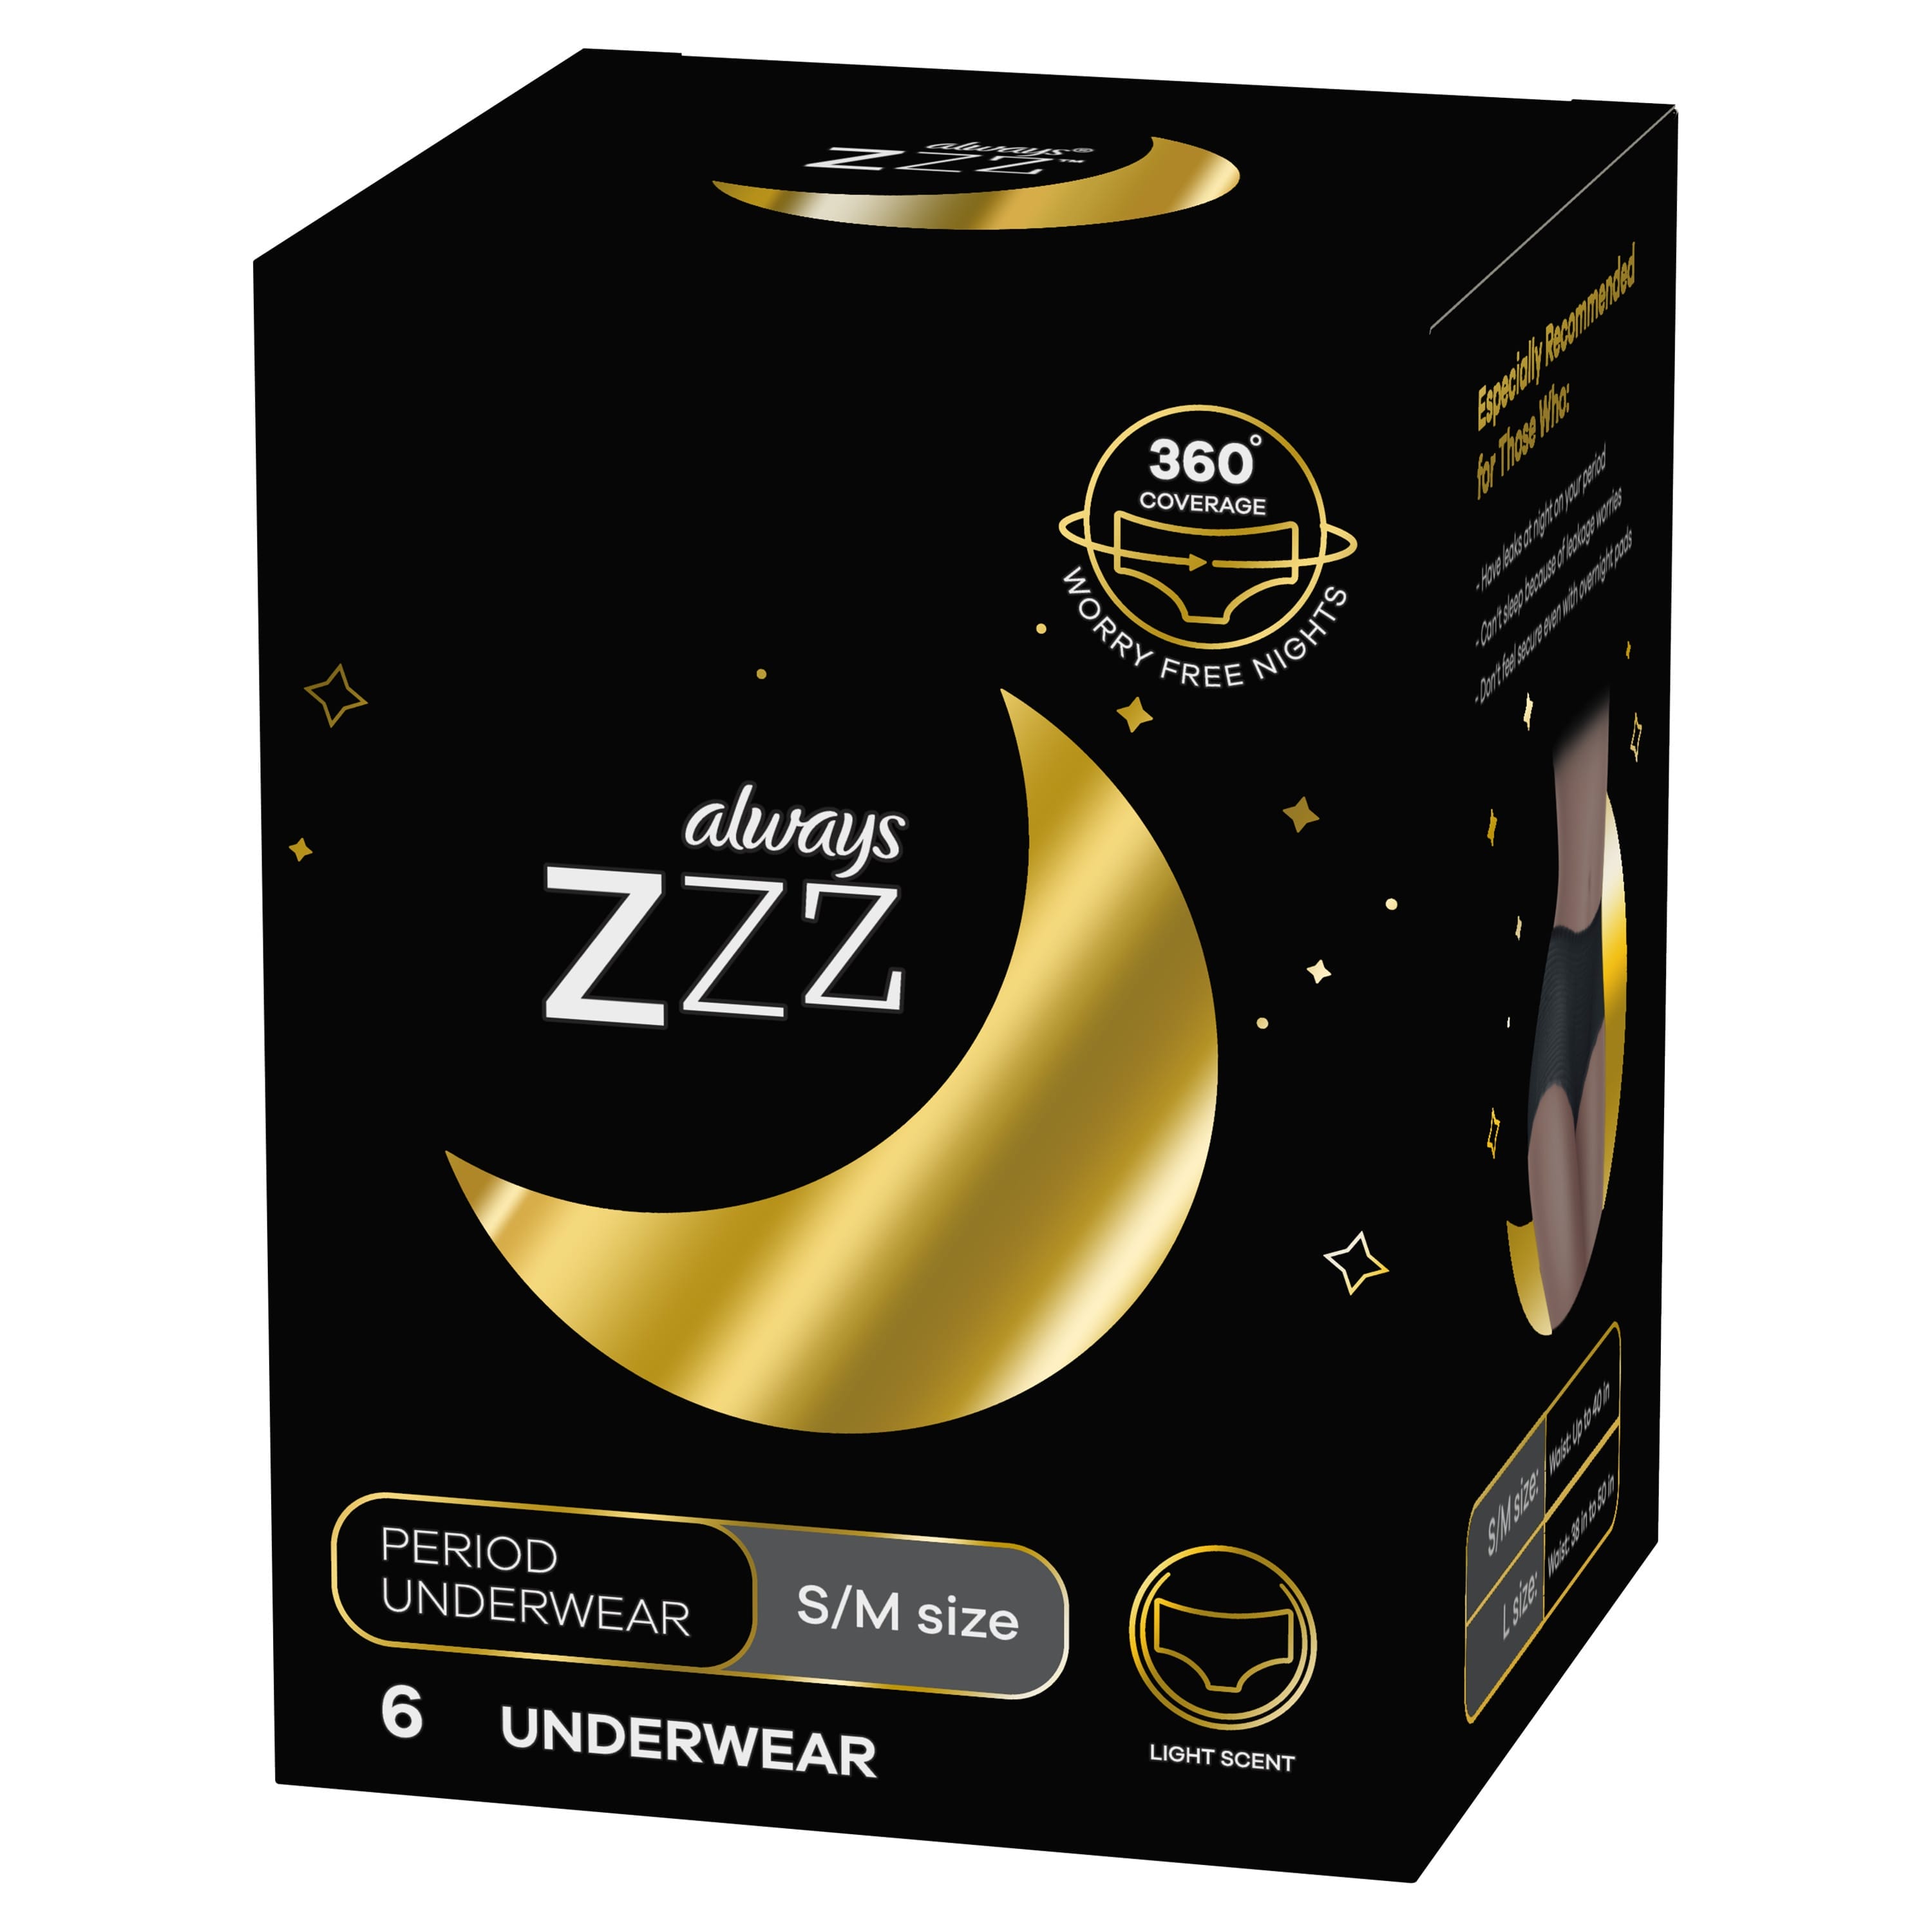  Always ZZZs Overnight Disposable Period Underwear